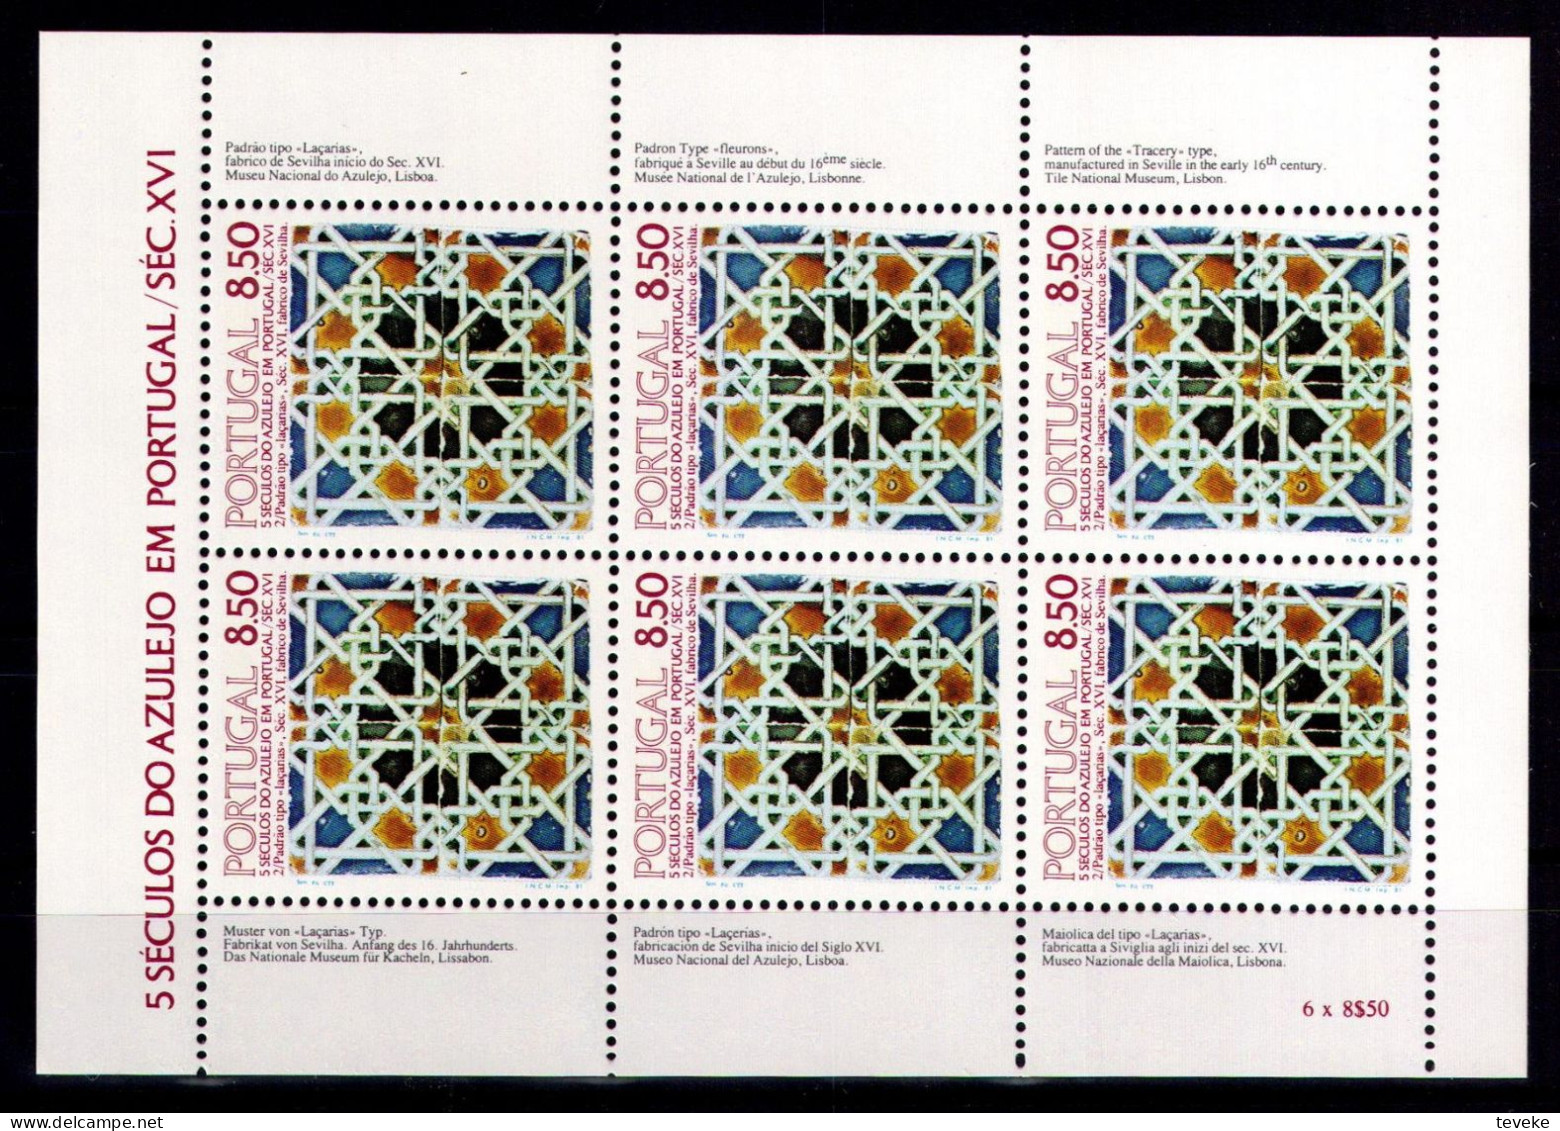 PORTUGAL 1981 - Michel Nr. 1535 KB - MNH ** - Azulejos - Neufs